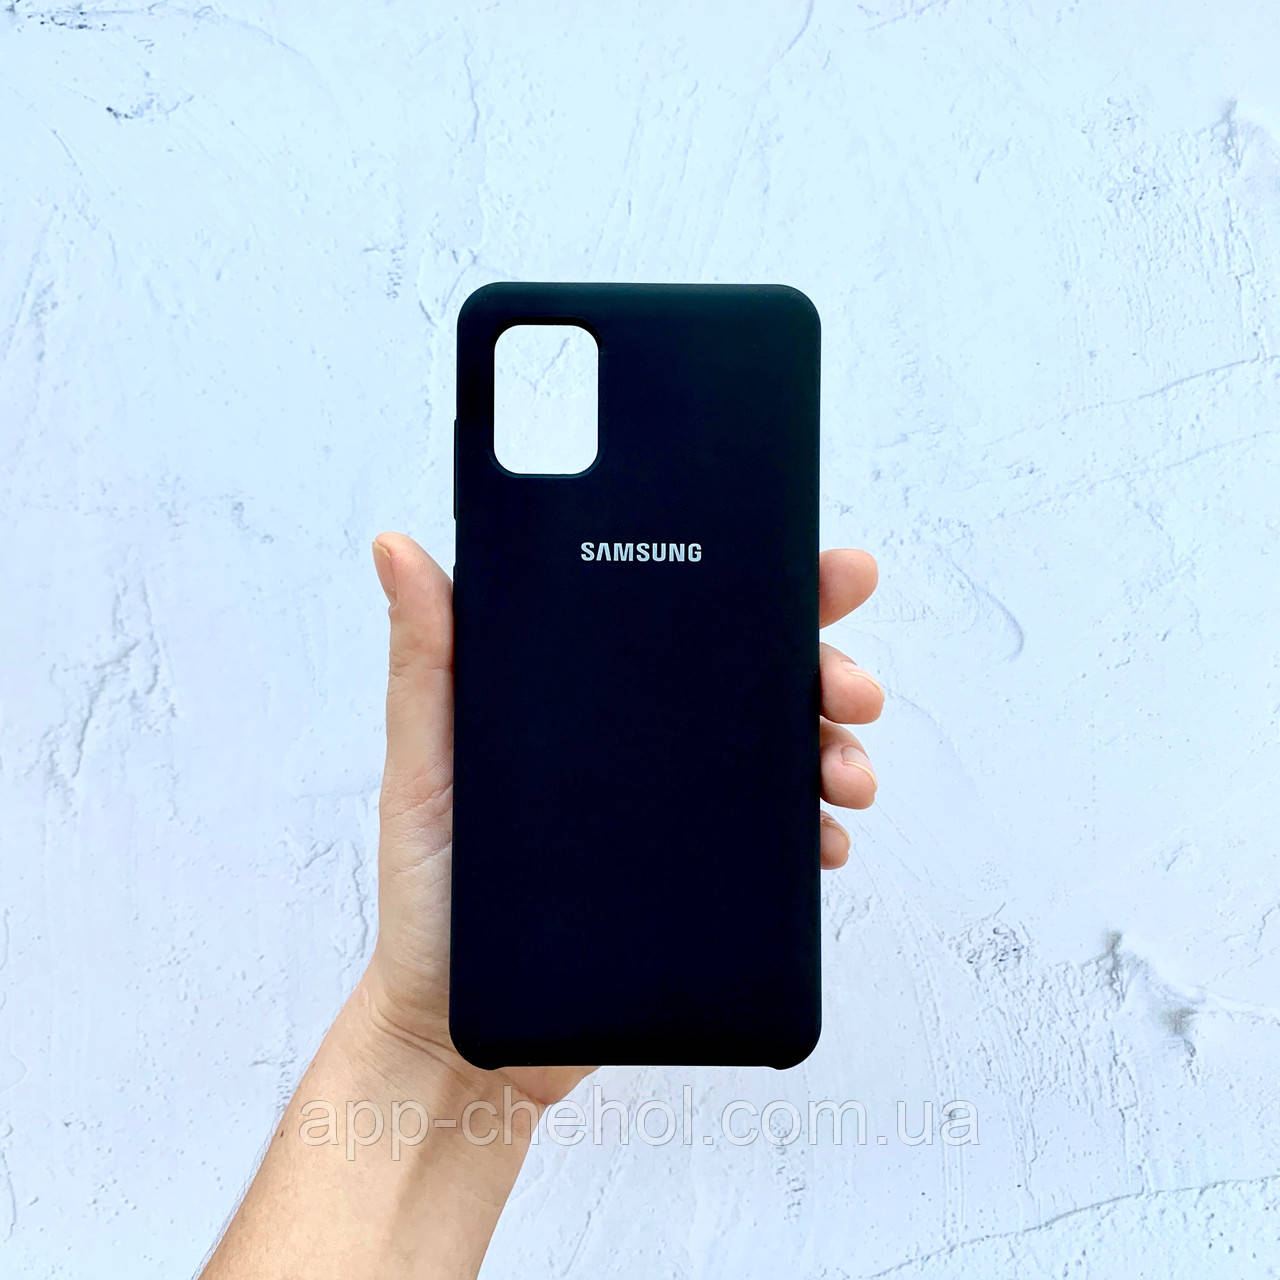 

Чехол на Samsung Galaxy A31 Silicone Case черный силиконовый Soft Touch / для Самсунг Гелекси А31